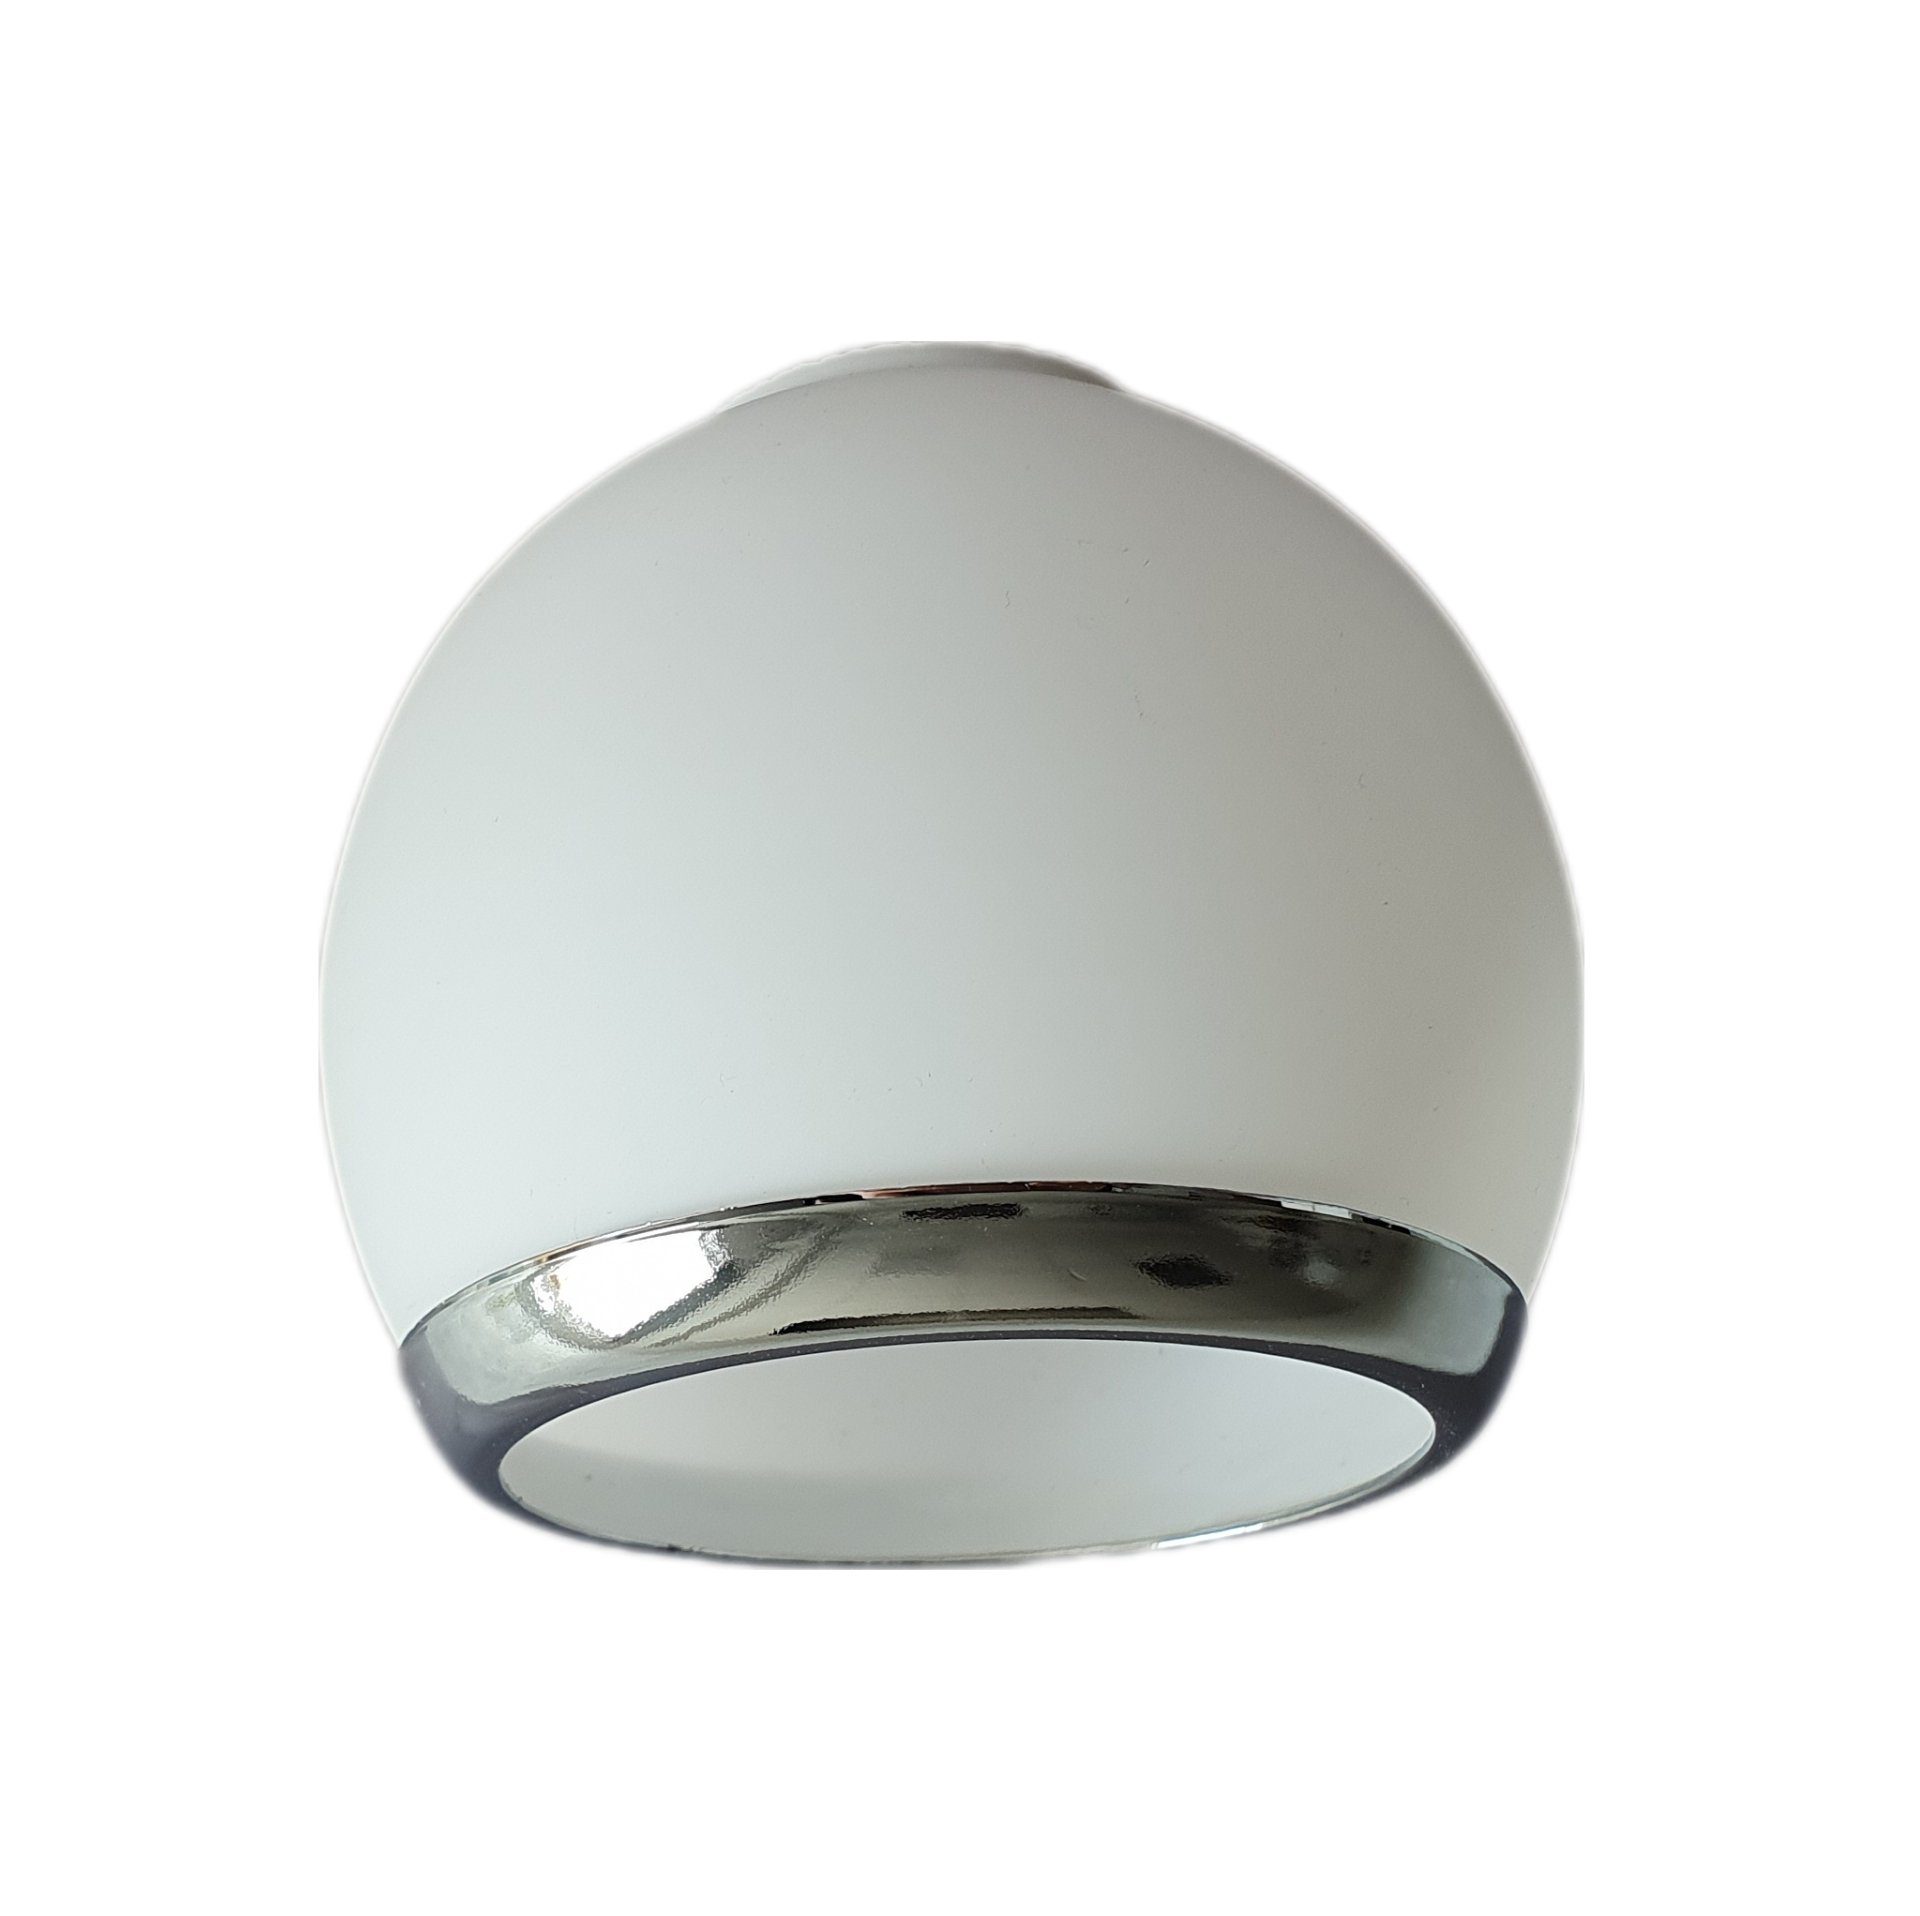 Lichthandel Hoch Lampenschirm E14 Lampenglas Ersatzschirm Lampe Lampenschirm Ersatzglas weiß